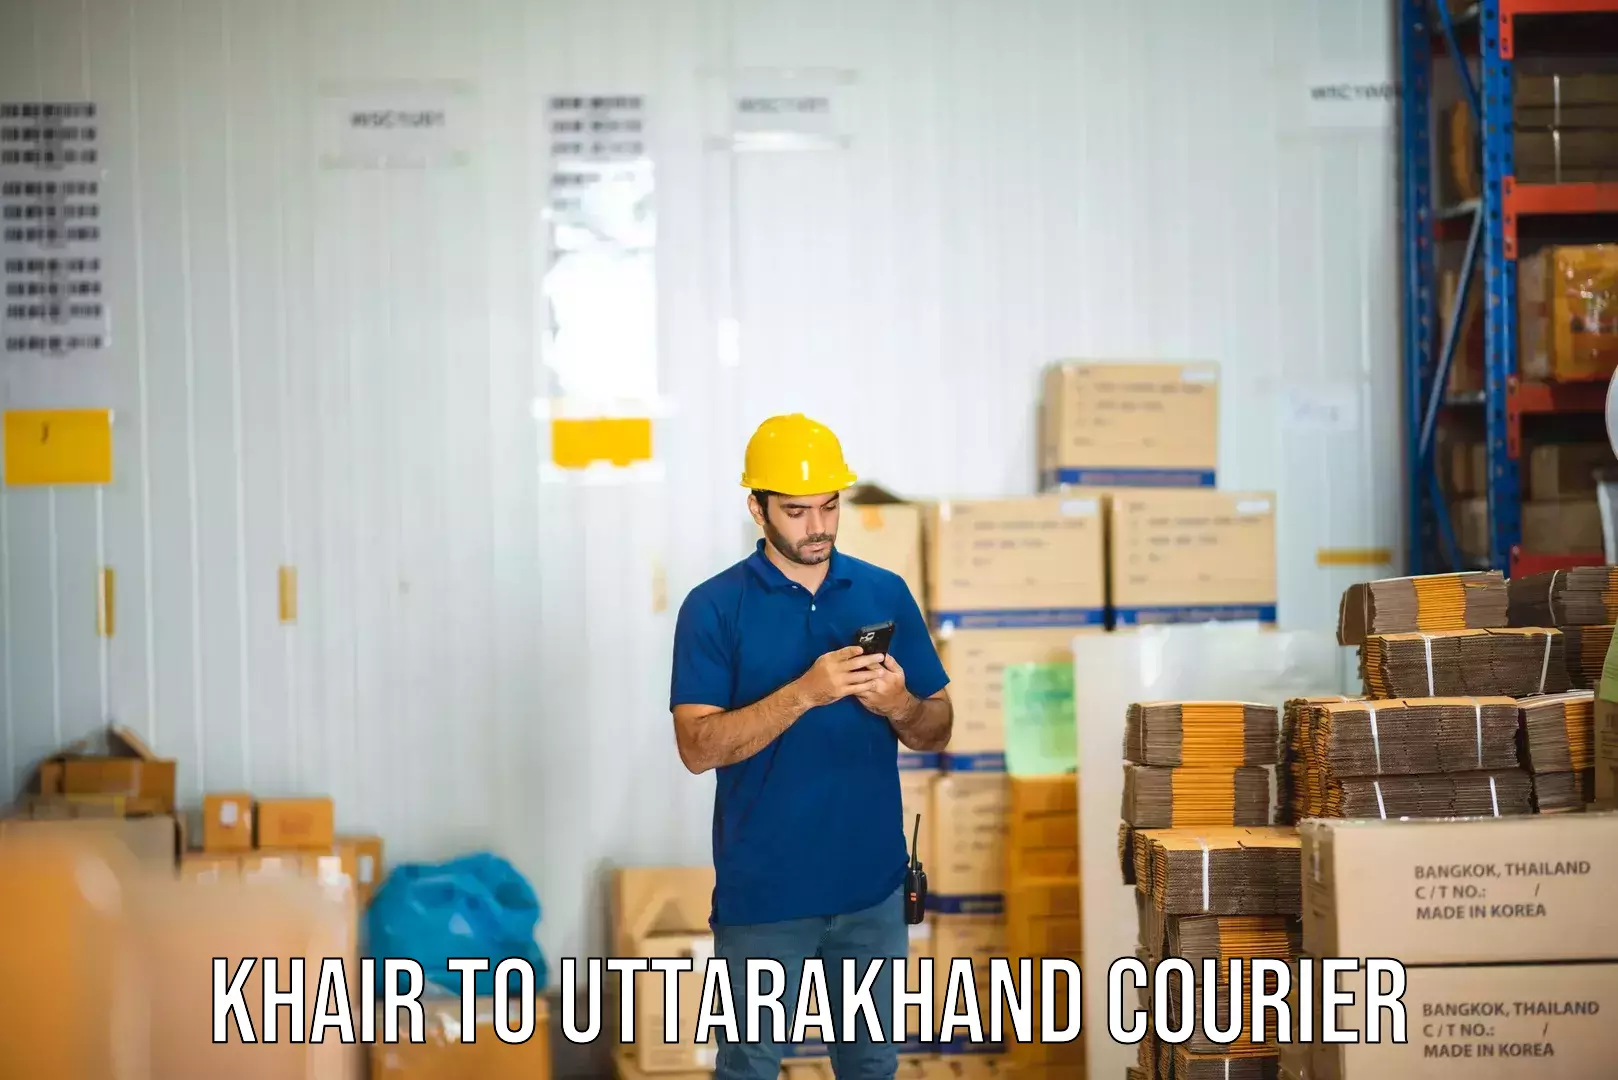 Weekend courier service Khair to Uttarakhand